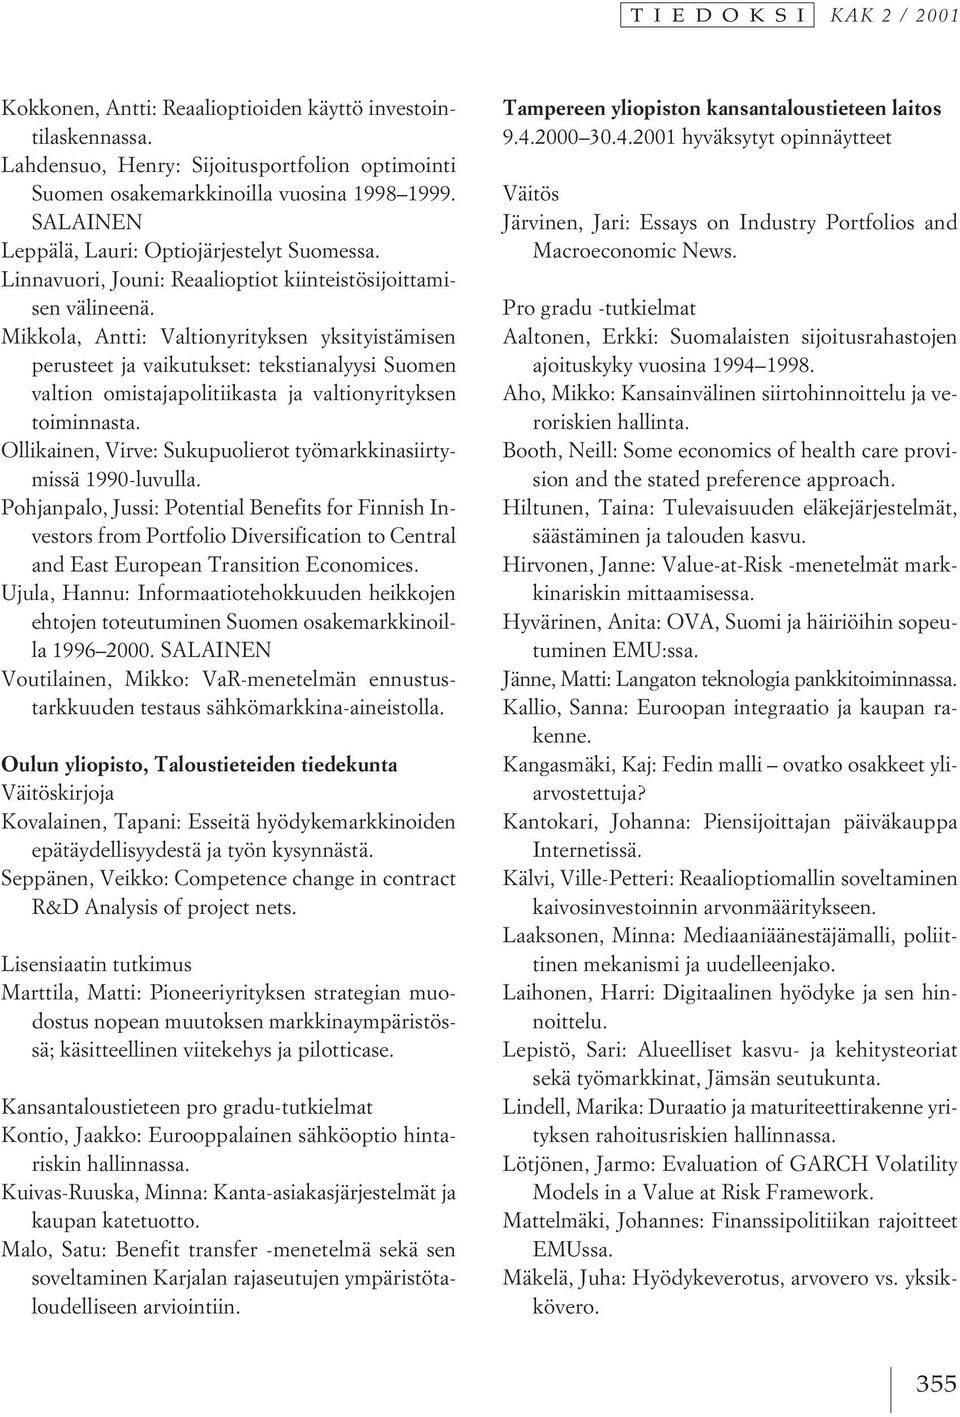 Mikkola, Antti: Valtionyrityksen yksityistämisen perusteet ja vaikutukset: tekstianalyysi Suomen valtion omistajapolitiikasta ja valtionyrityksen toiminnasta.